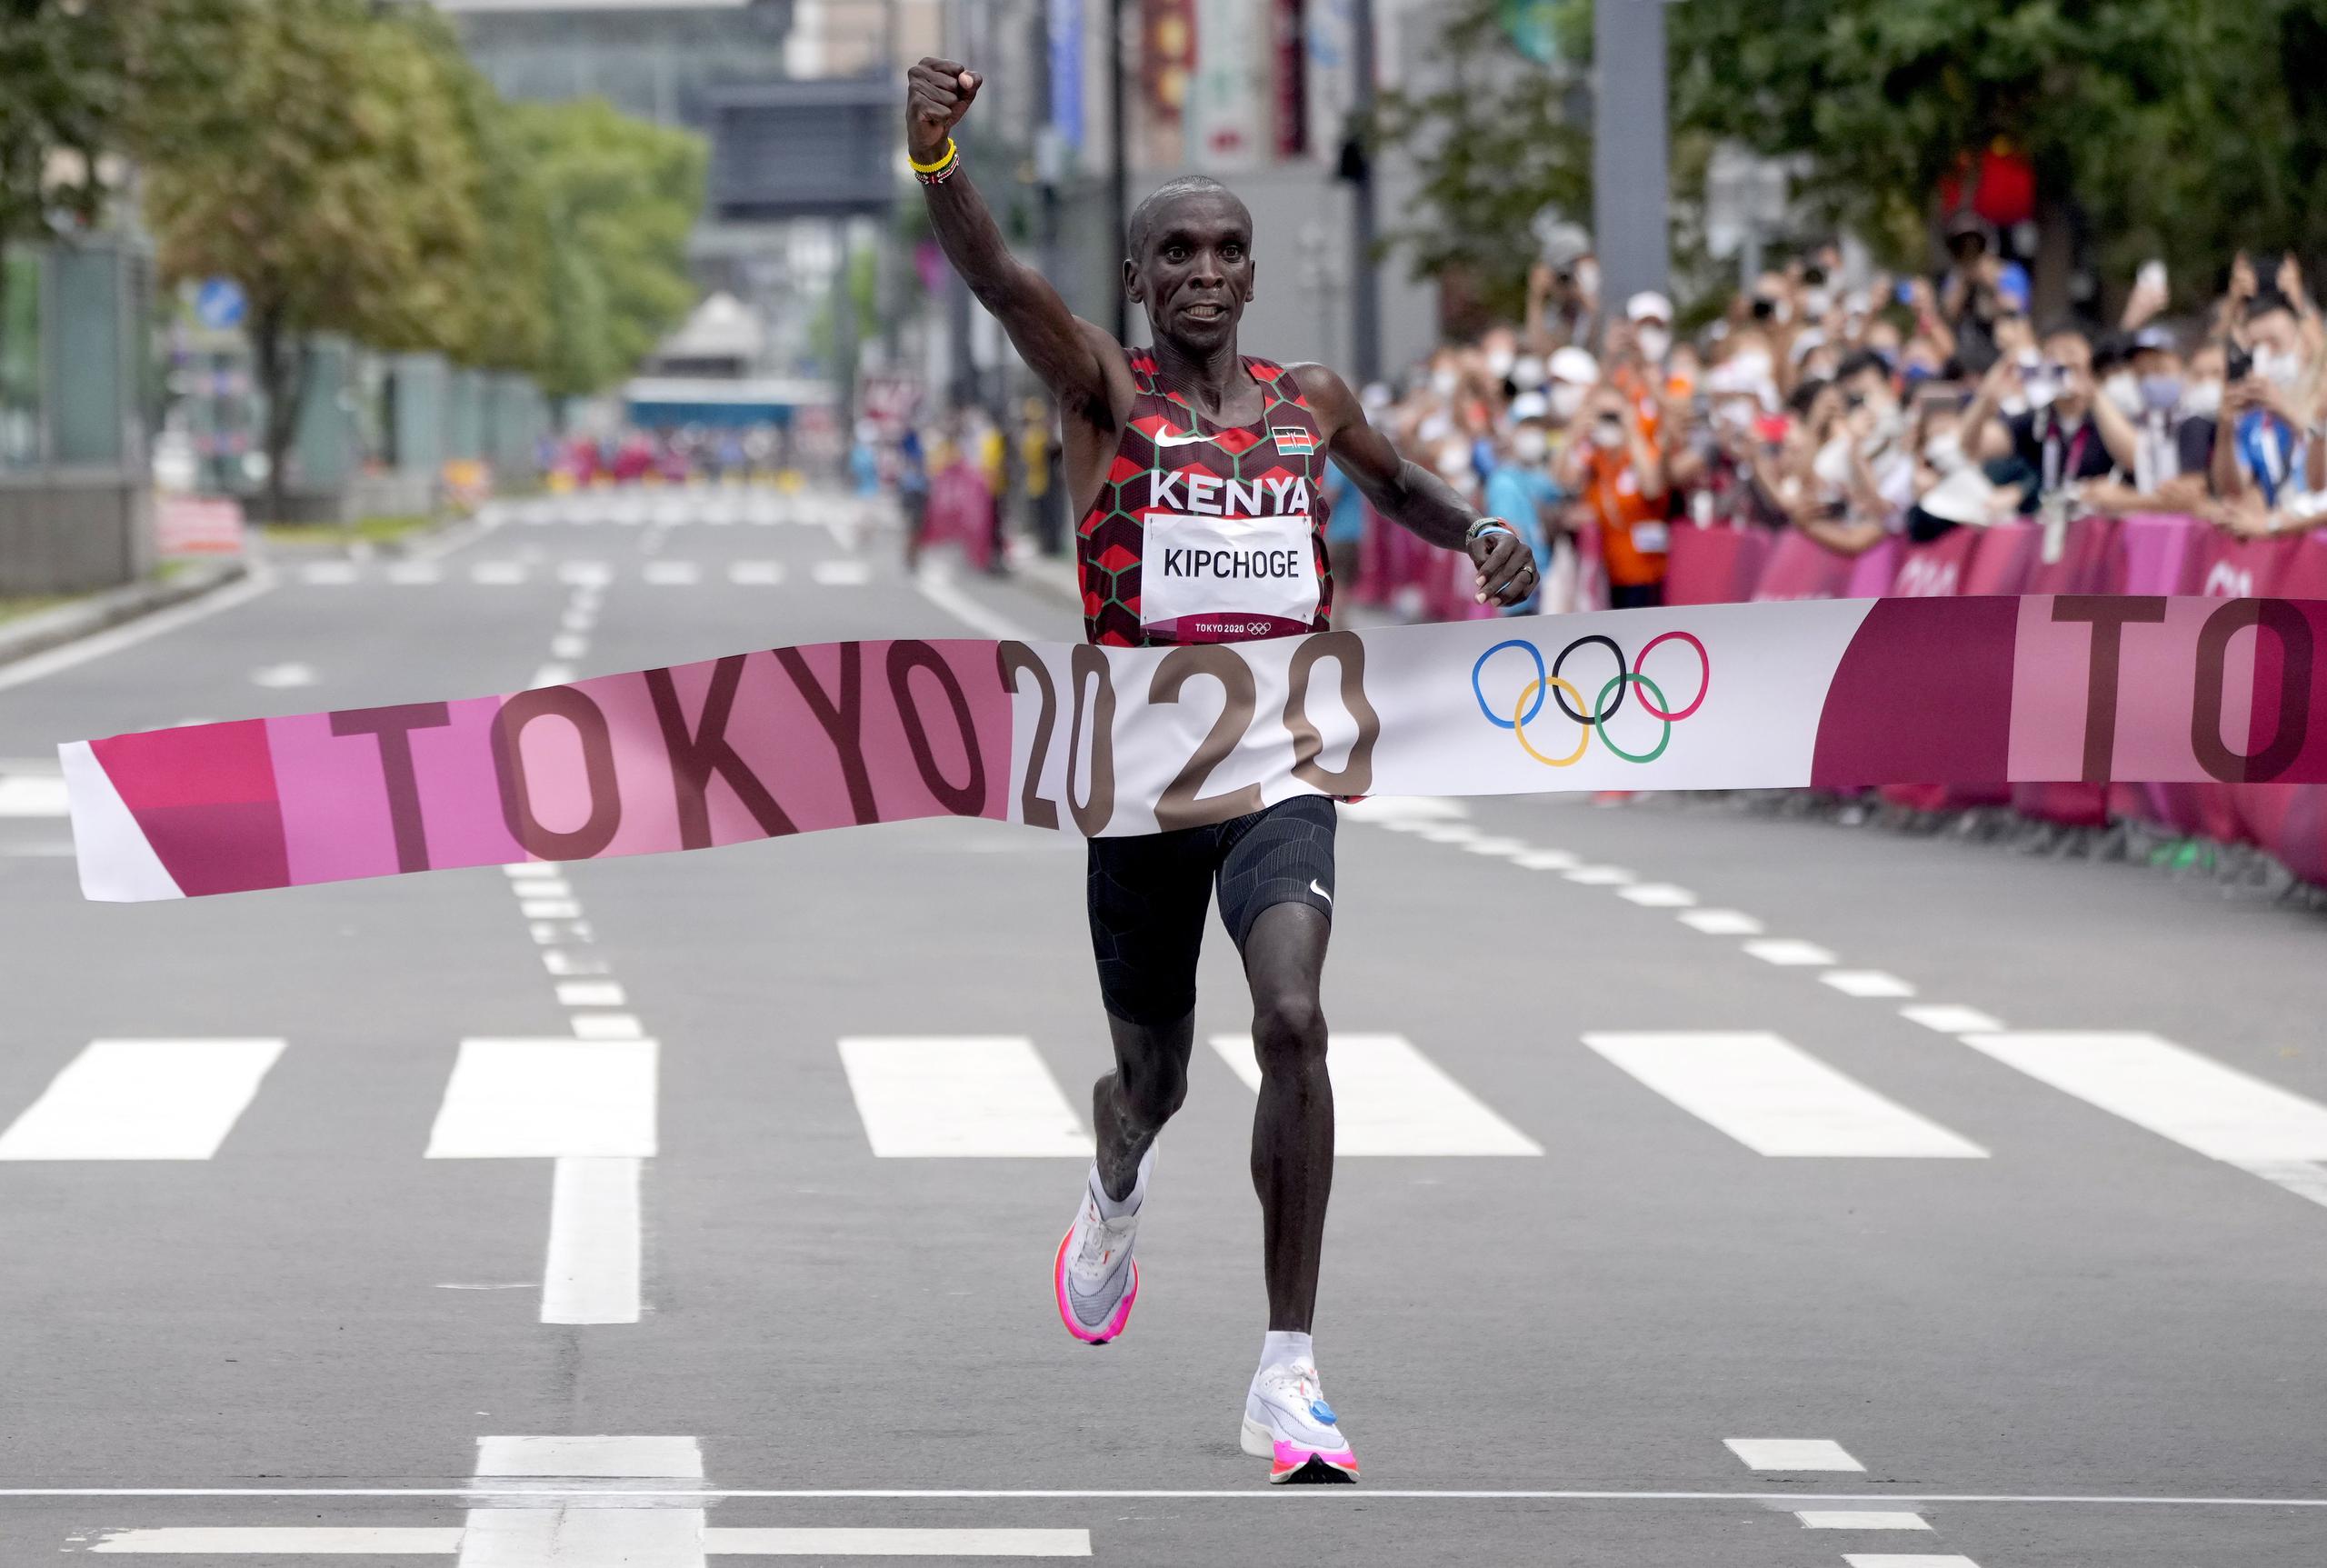 Con una amplia ventaja, el keniano Eliud Kipchoge cruzó la meta de la maratón con tiempo de 2:08.38. Es solo el tercer competidor que gana la maratón en ediciones consecutivas en la historia.